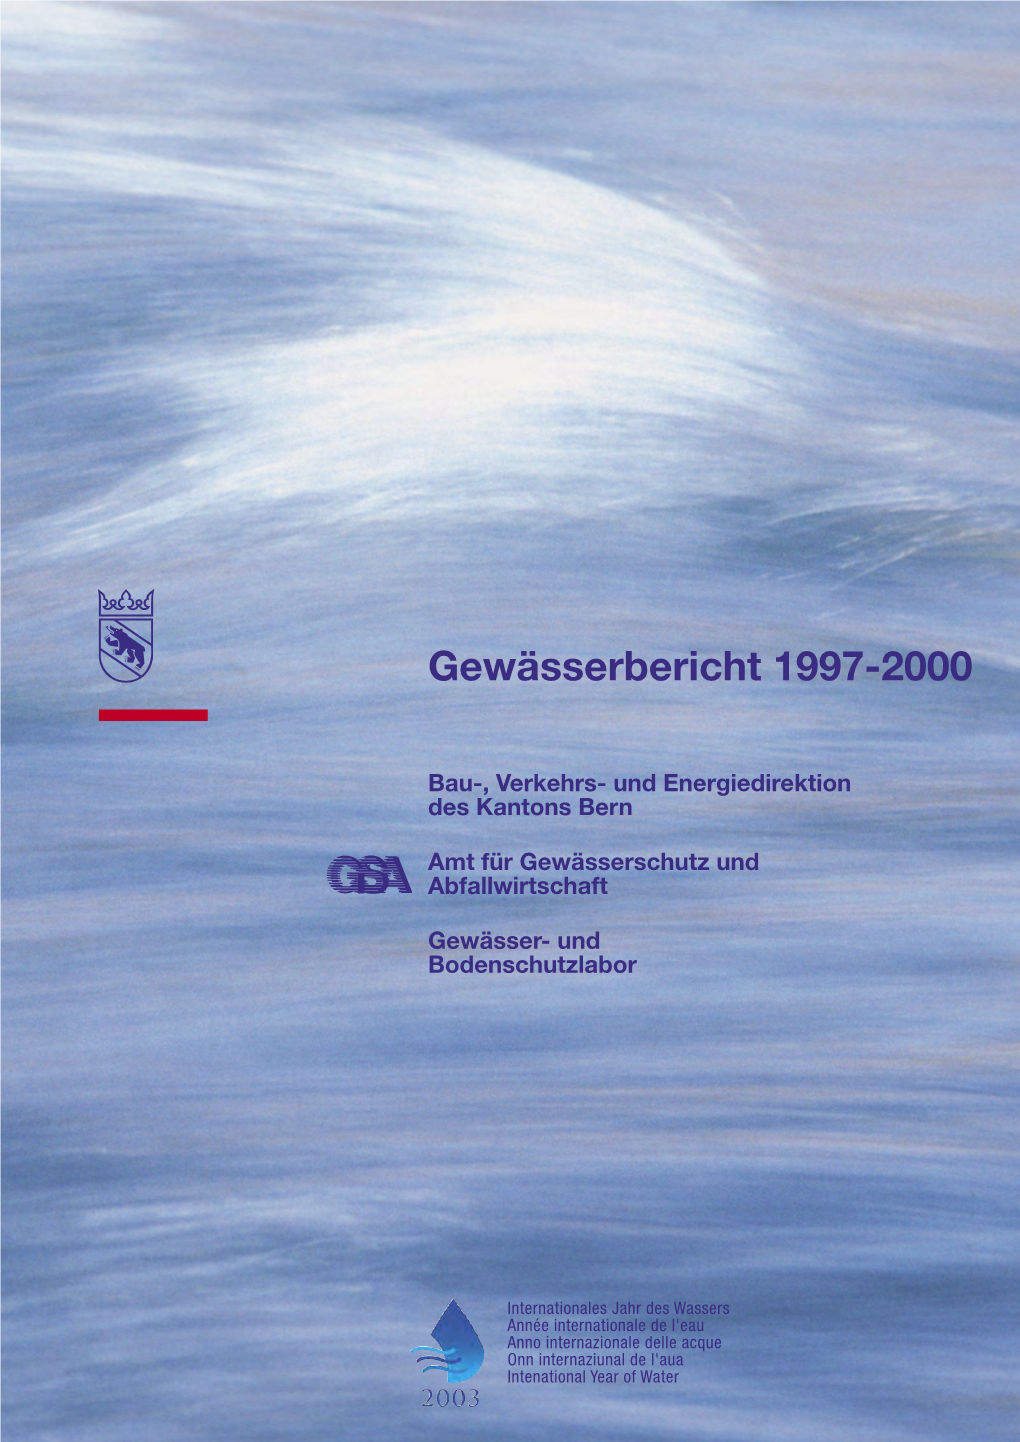 GBL 2003 Gewässerbericht 1997-2000 Link